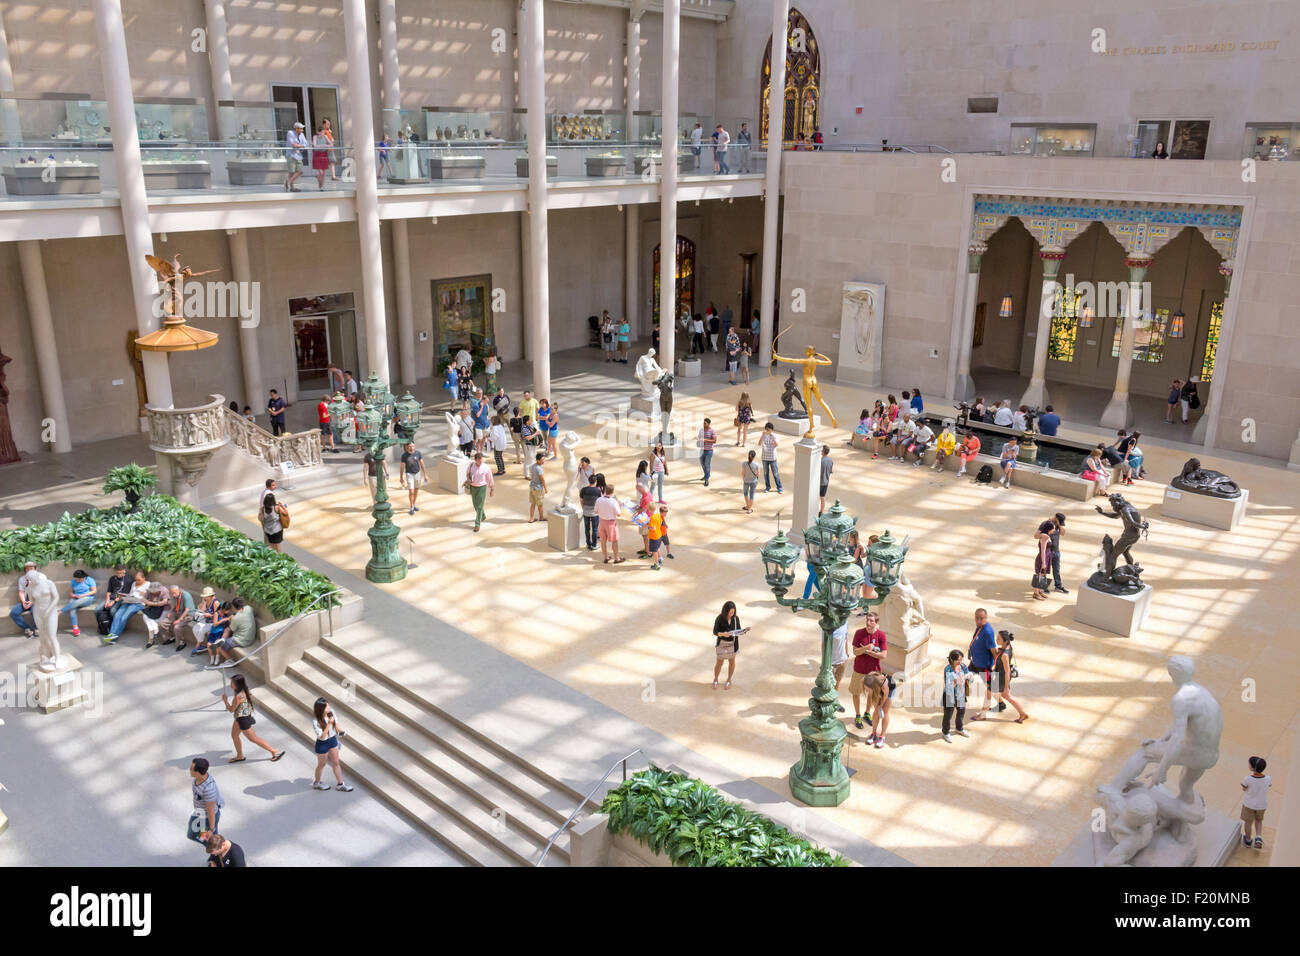 Visitors viewing artwork in the Metropolitan Museum of Art, Manhattan, New York City. Stock Photo